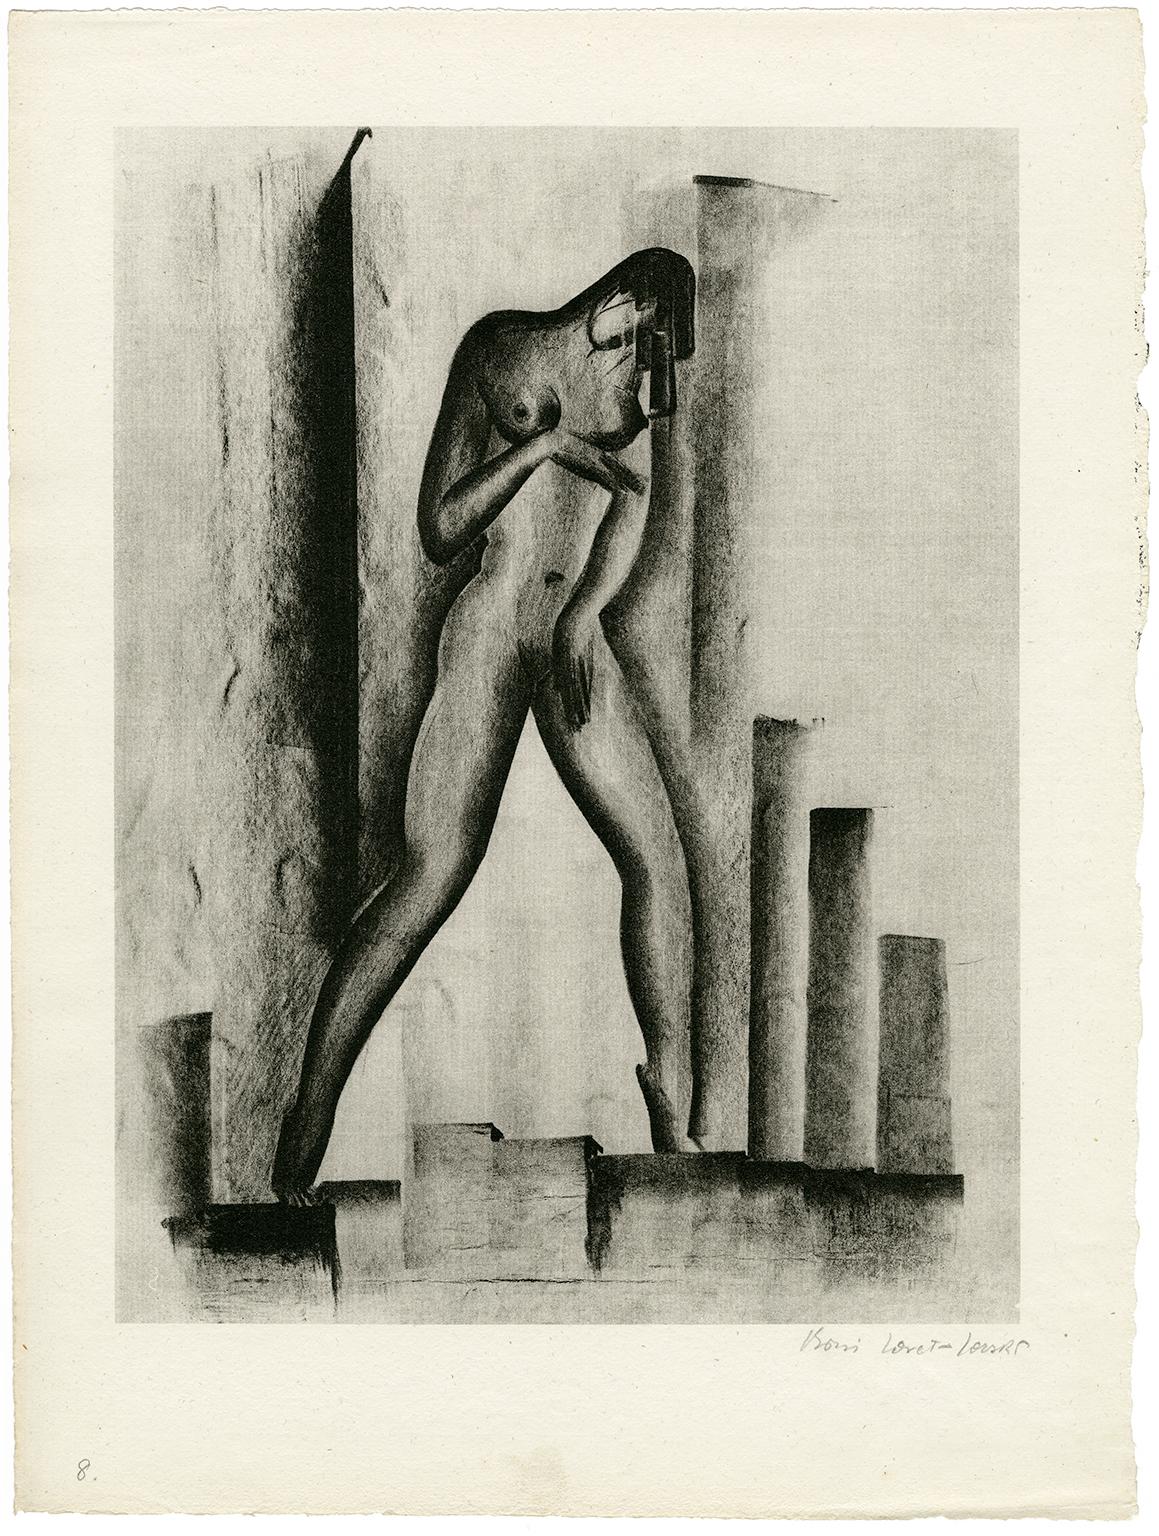 Untitled (Nude with Buildings) - Print by Boris Lovet-Lorski